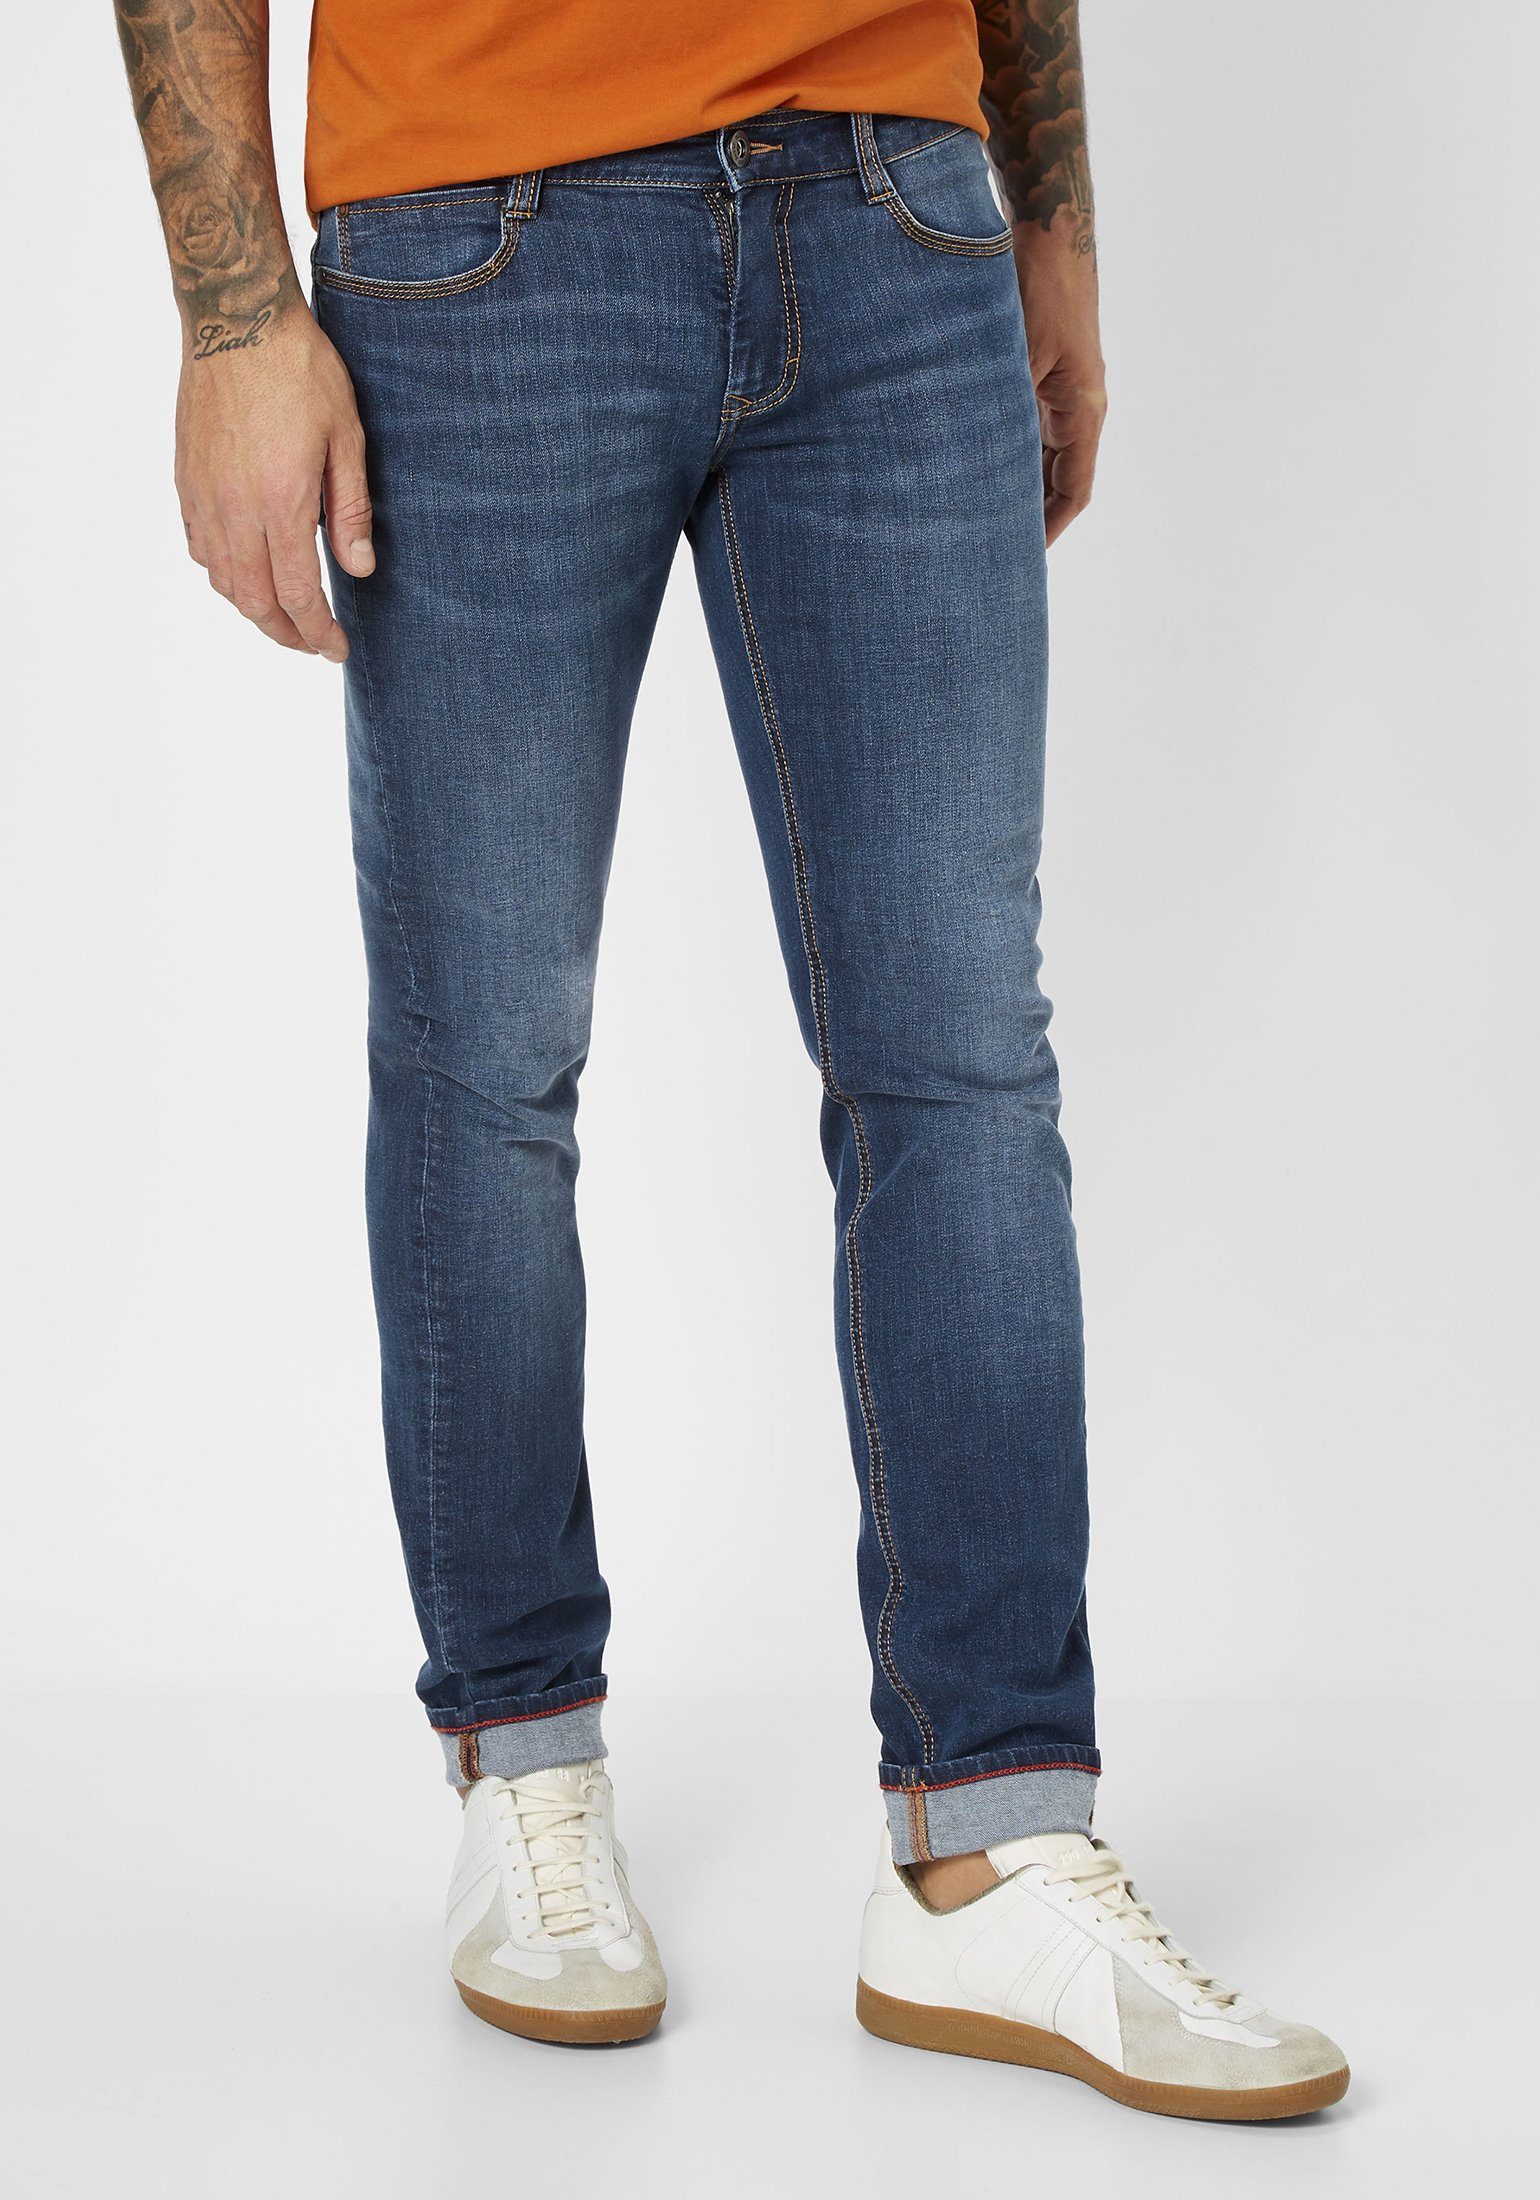 Paddock's 5-Pocket-Jeans DEAN moderne Slim-Fit Denim Jeans medium blue